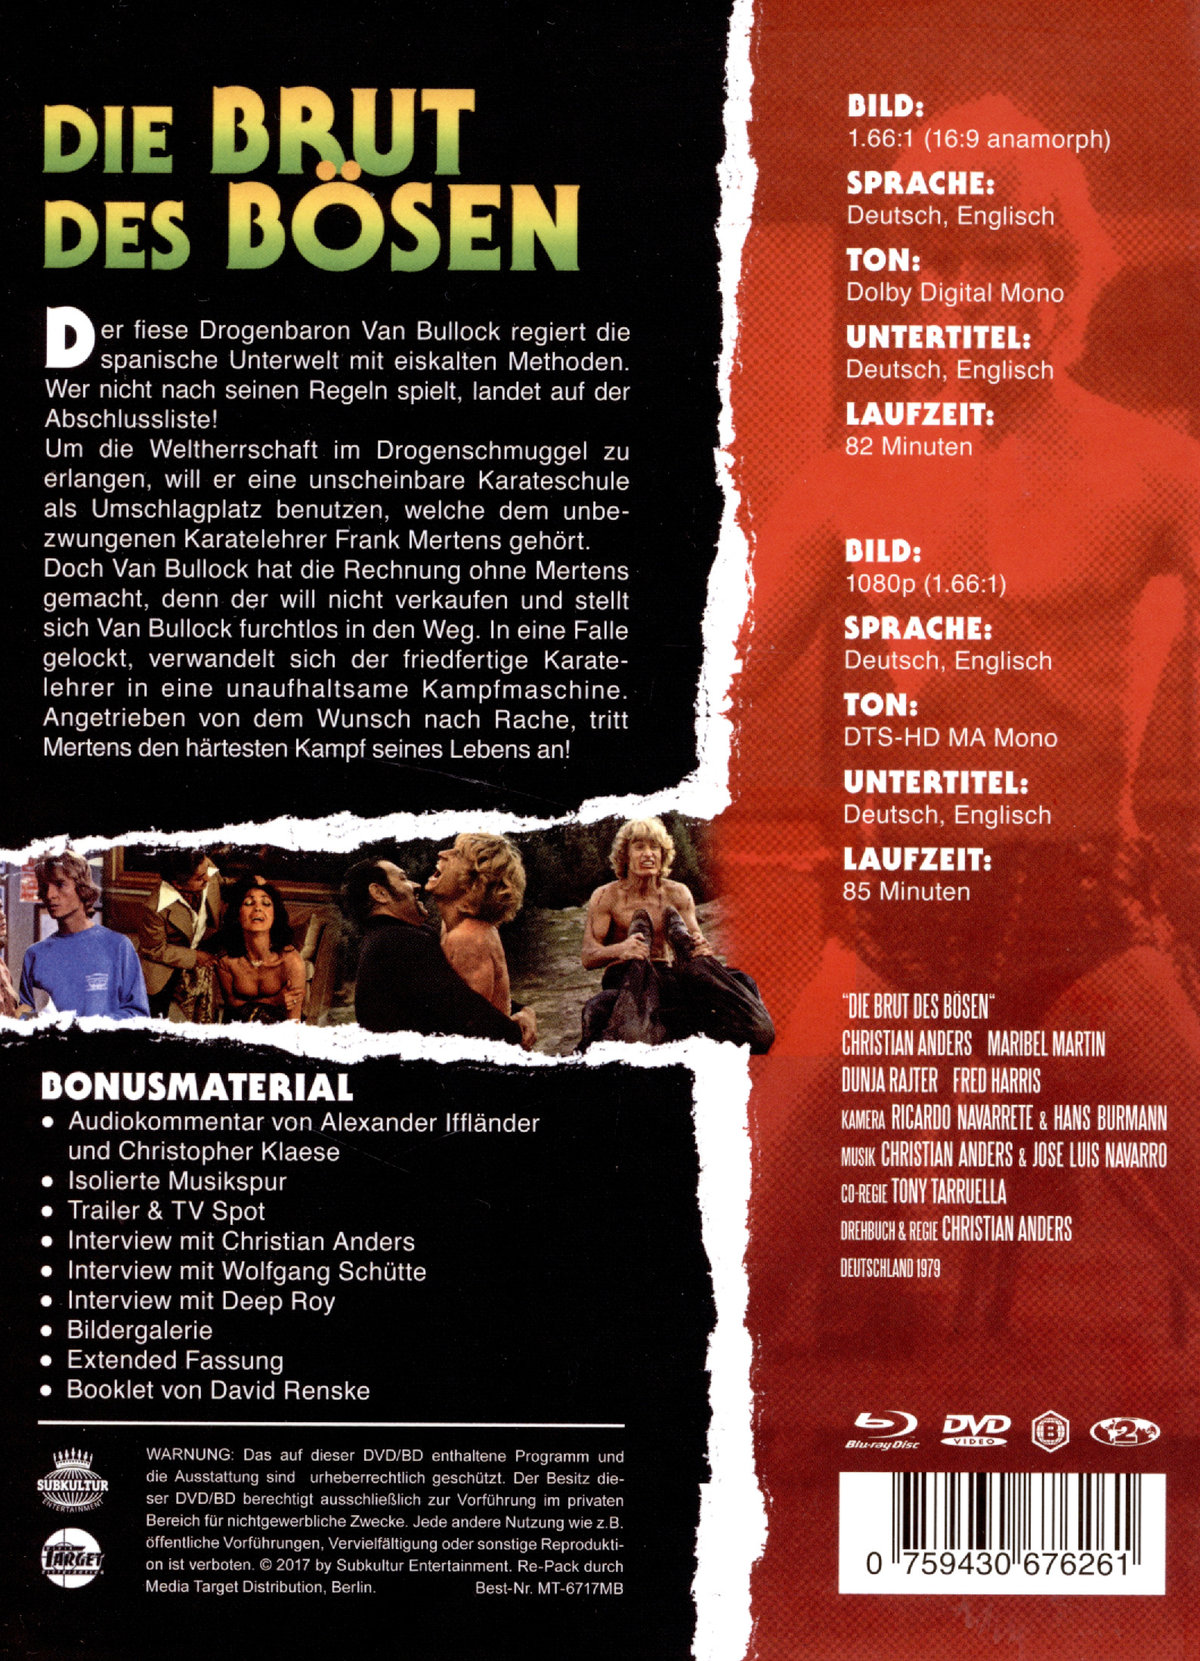 Brut des Bösen, Die - Uncut Mediabook Edition (DVD+blu-ray)